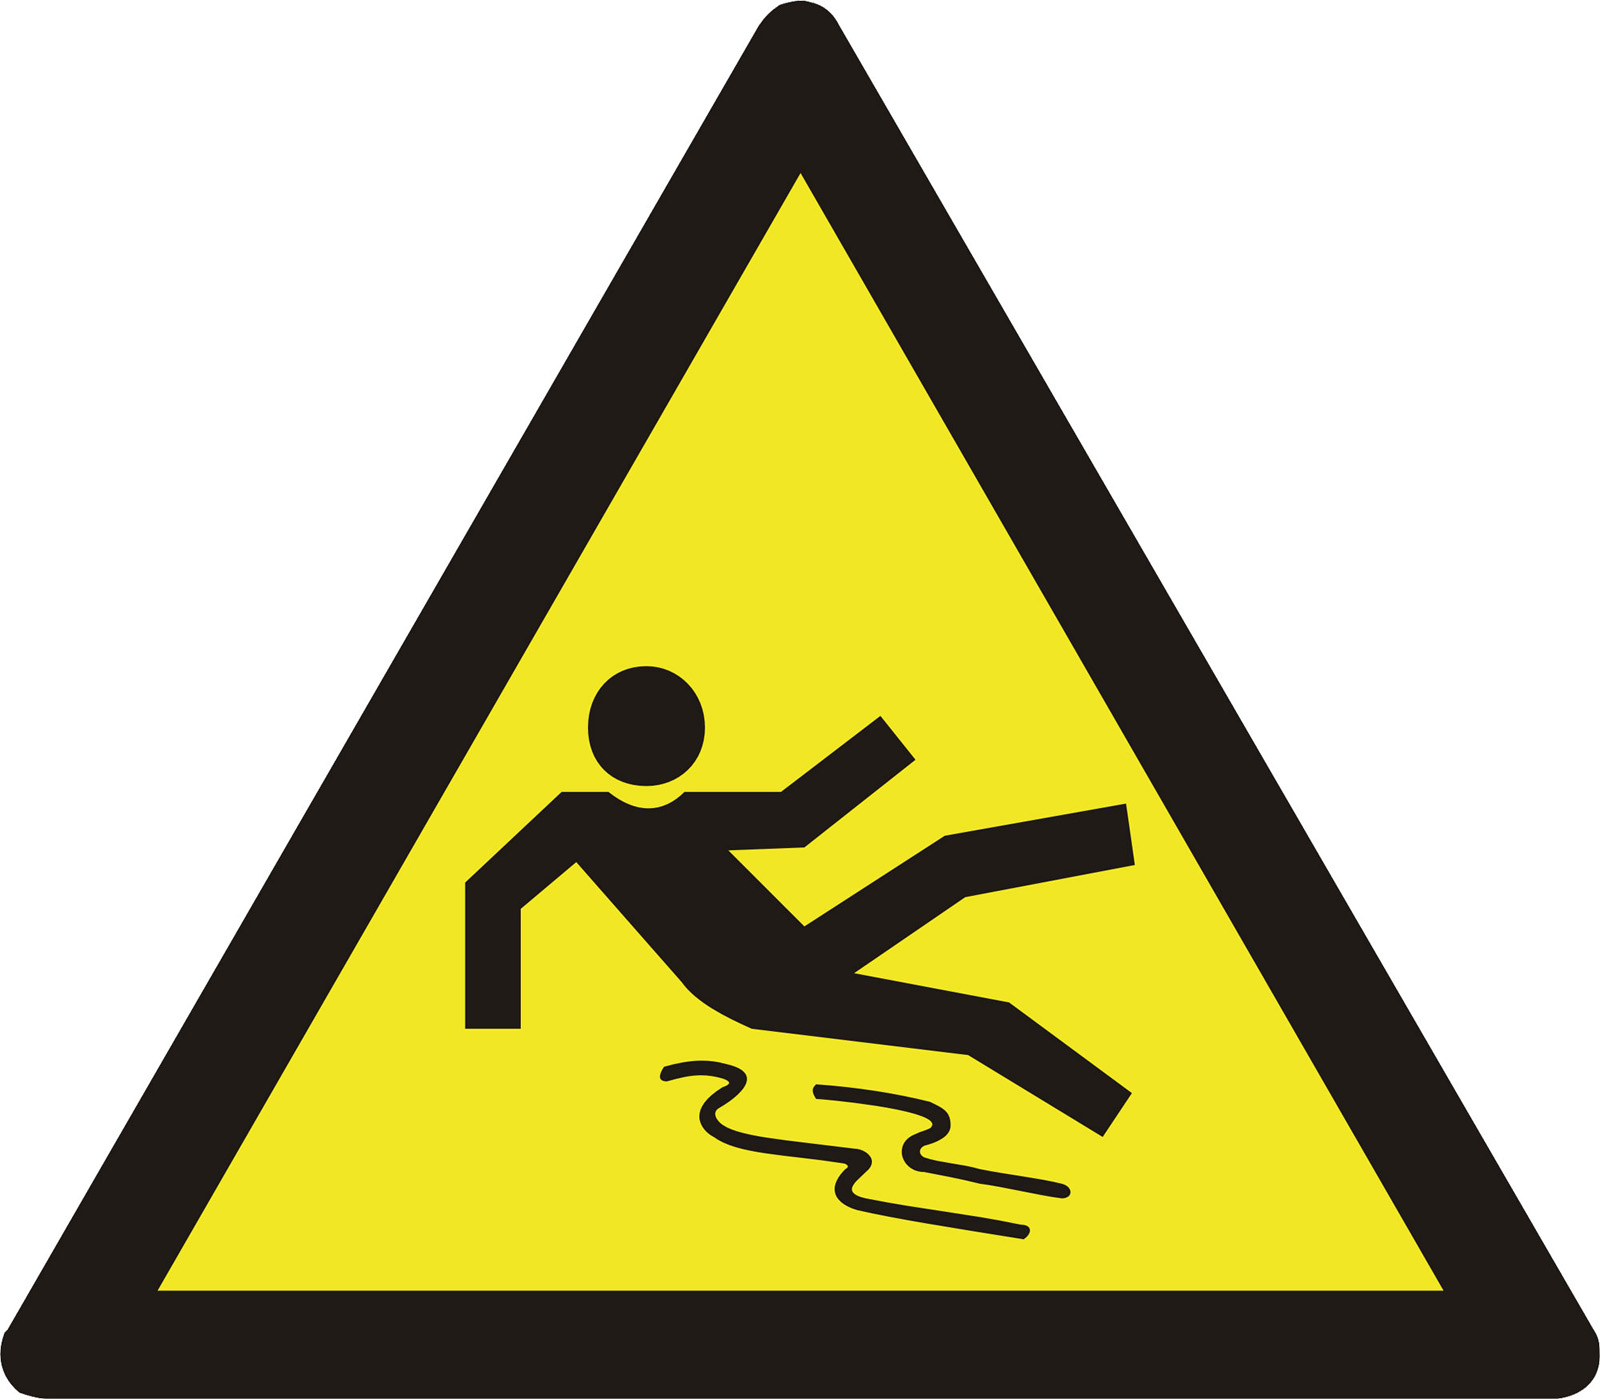 preproom.org - Warning Signs - Slip hazard